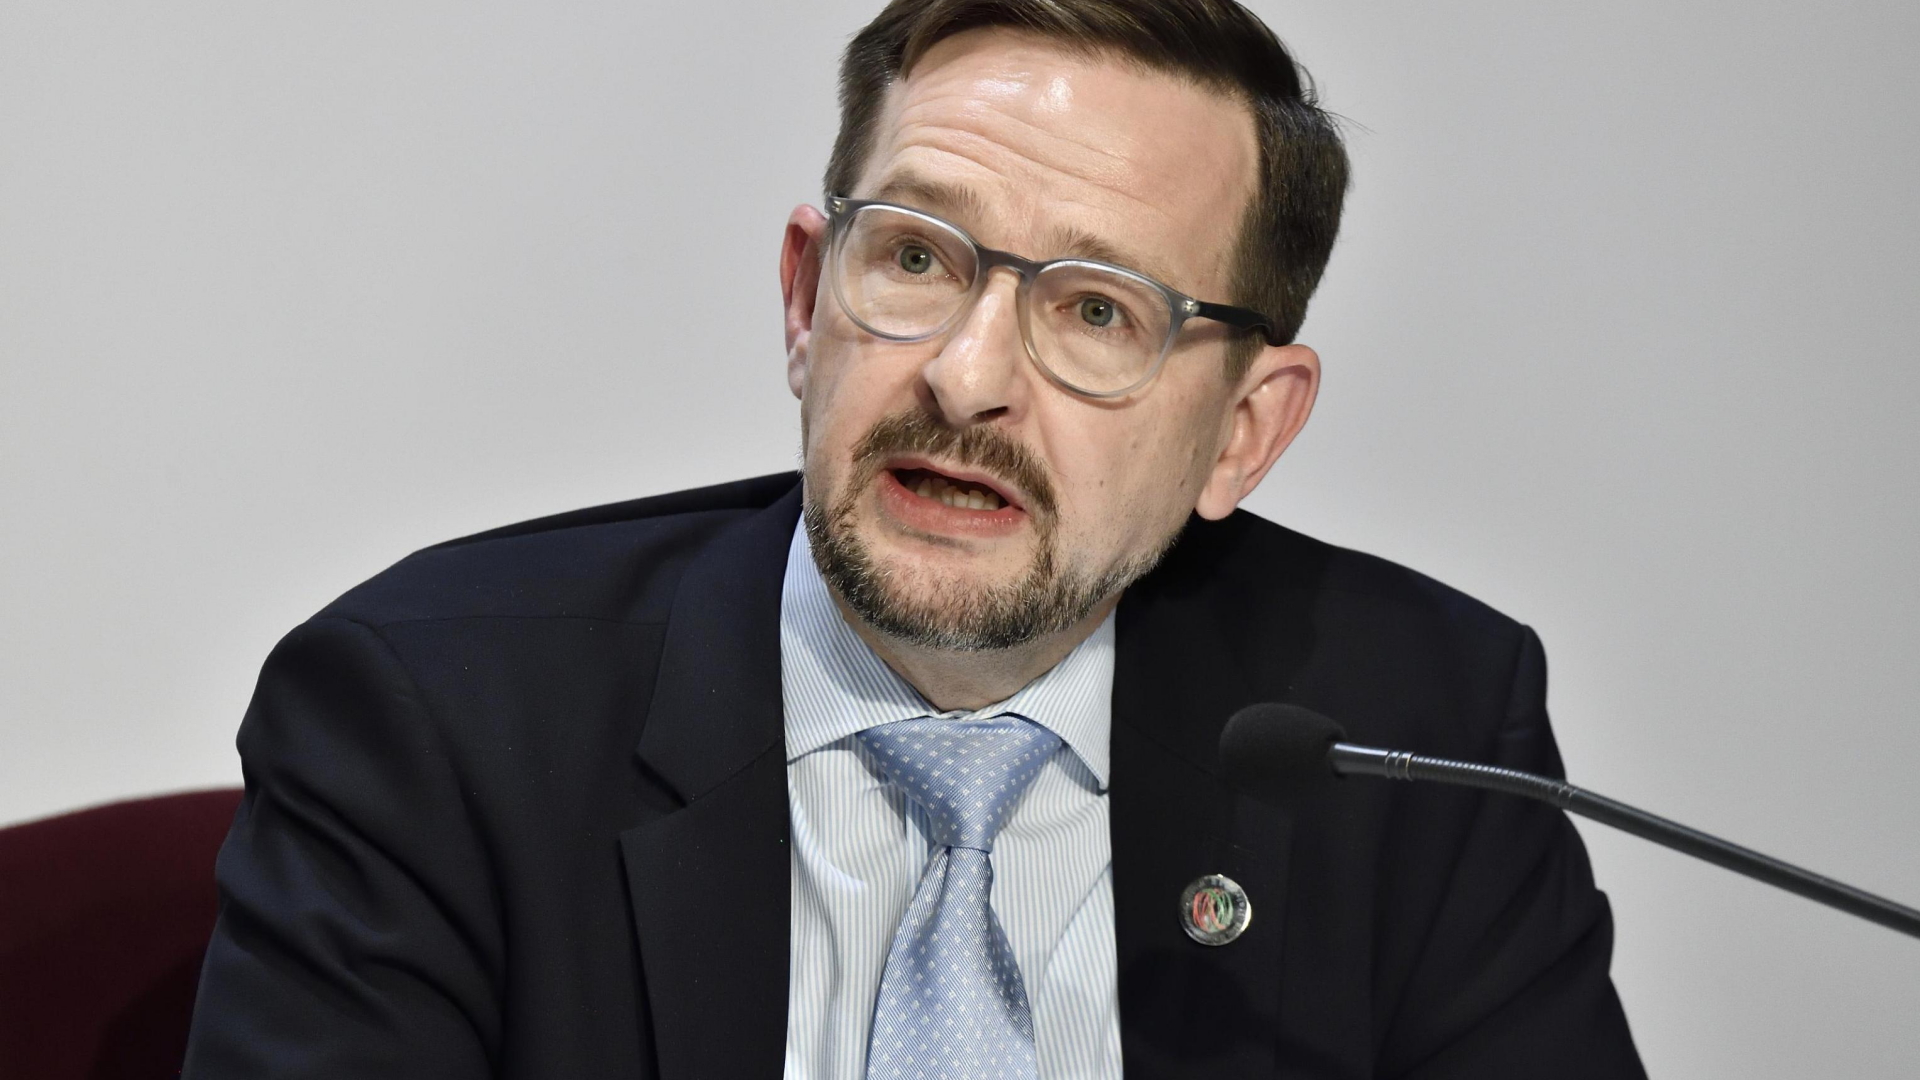 OSZE-Generalsekretär Thomas Greminger | FLAVIO LO SCALZO/EPA-EFE/REX/Shu